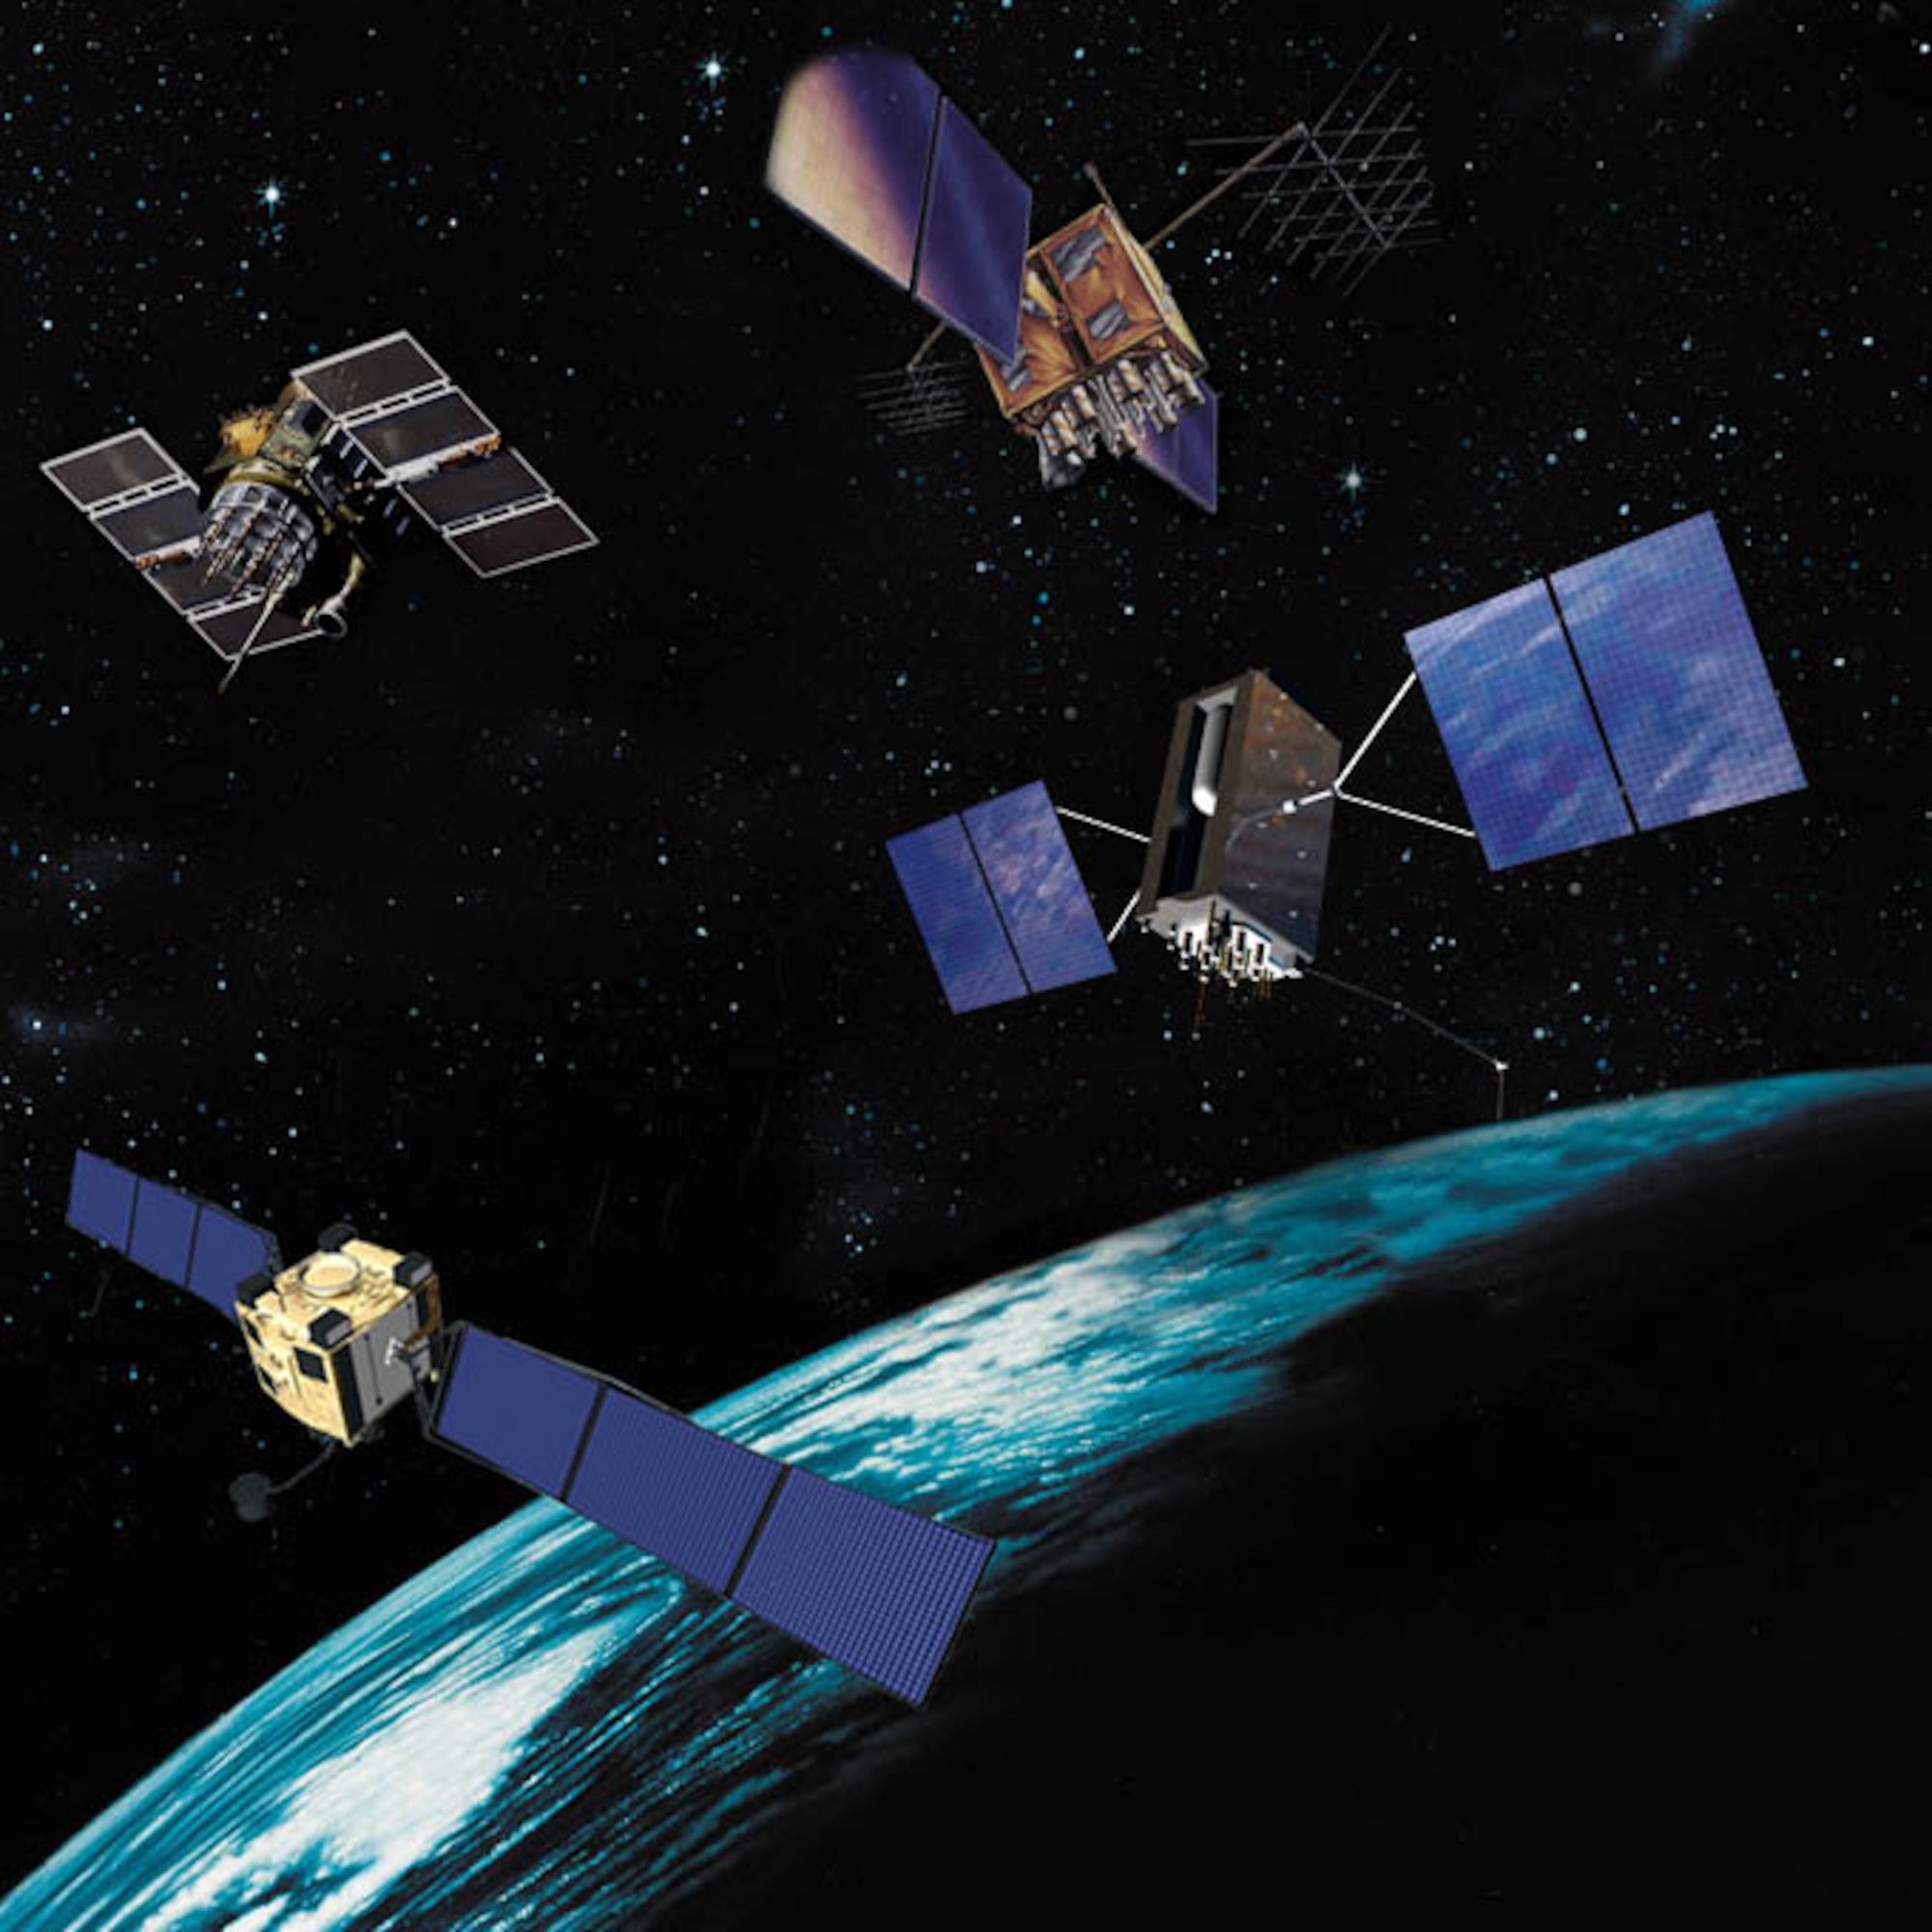 GPS Satellites II, IIR, IIF and III pictured over the Earth.
